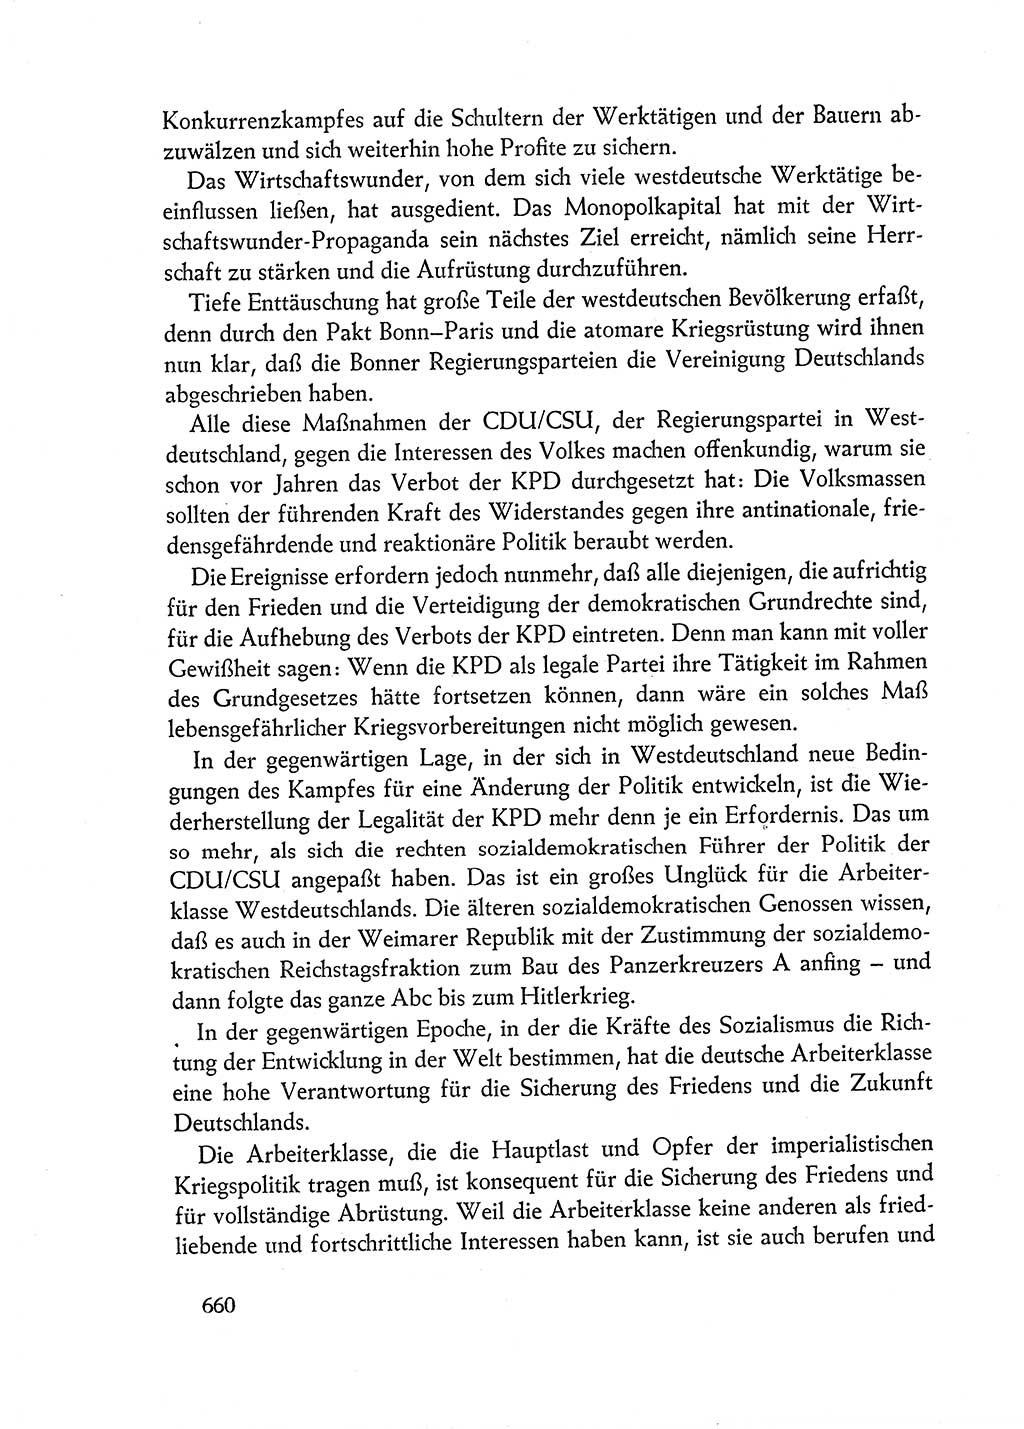 Dokumente der Sozialistischen Einheitspartei Deutschlands (SED) [Deutsche Demokratische Republik (DDR)] 1962-1963, Seite 660 (Dok. SED DDR 1962-1963, S. 660)